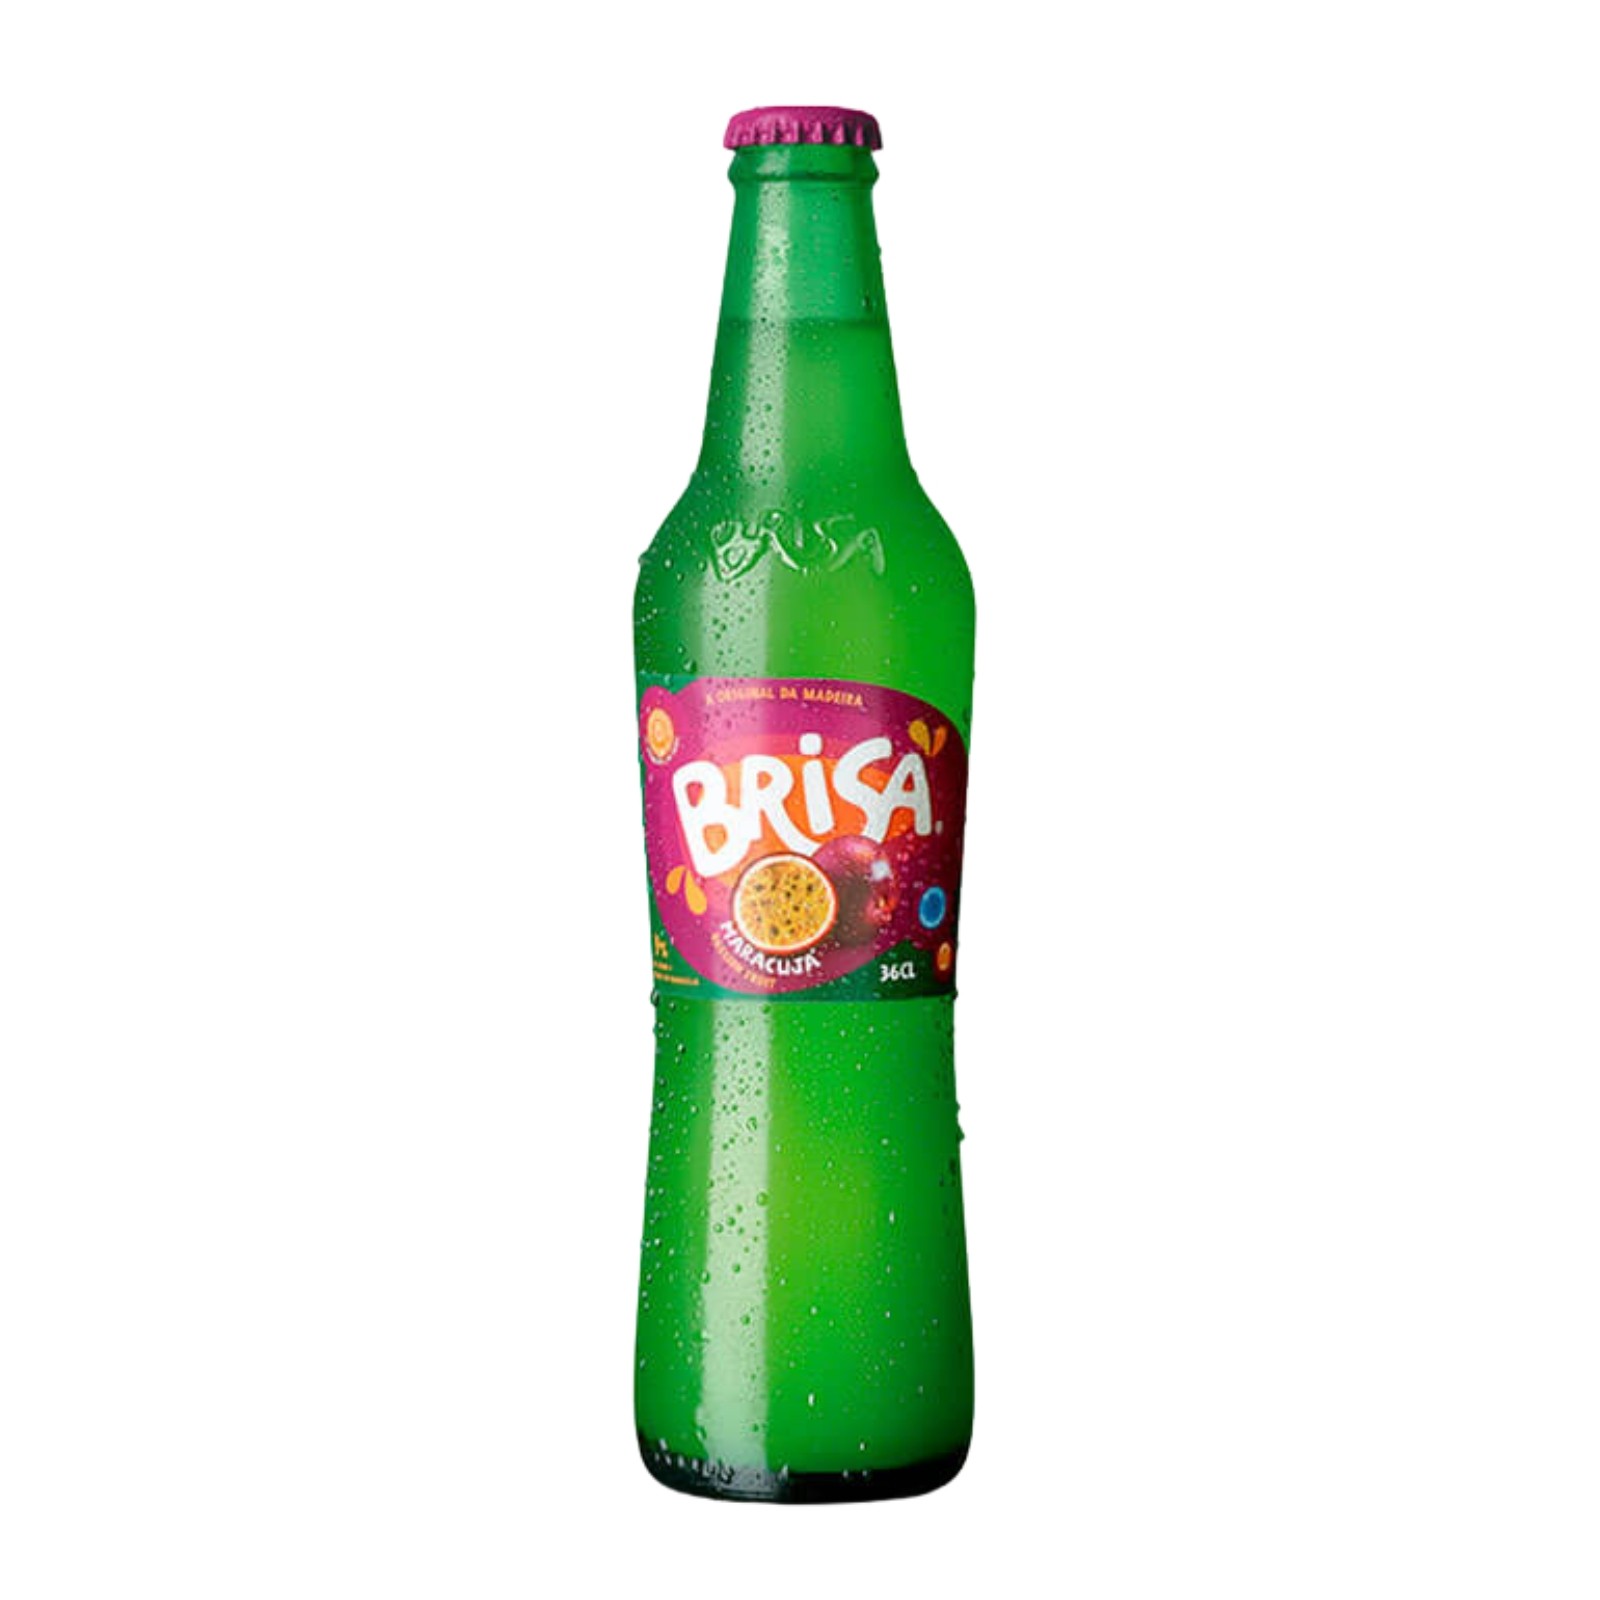 Brisa Passion Fruit Juice